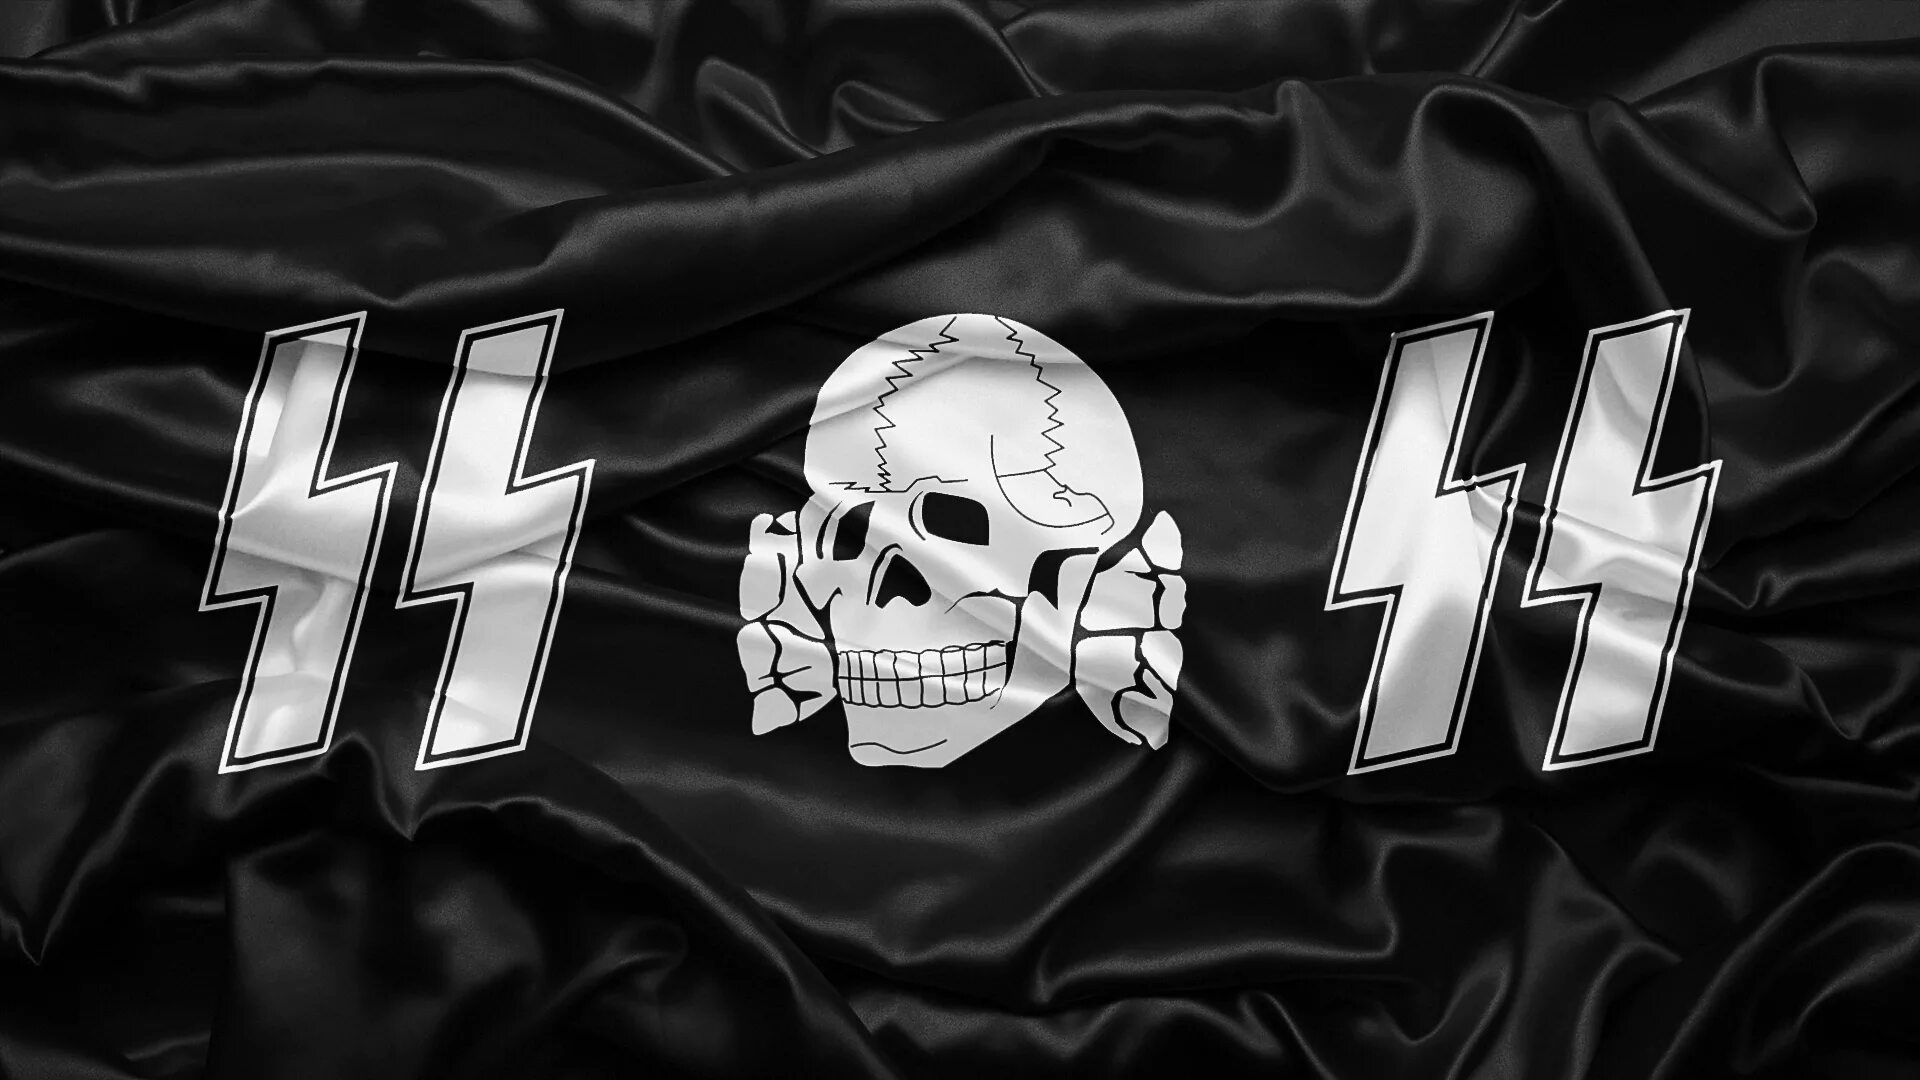 Waffen SS символика. Флаги 3 рейха и СС. Мертвая голова Тотенкопф. Флаг Ваффен СС.